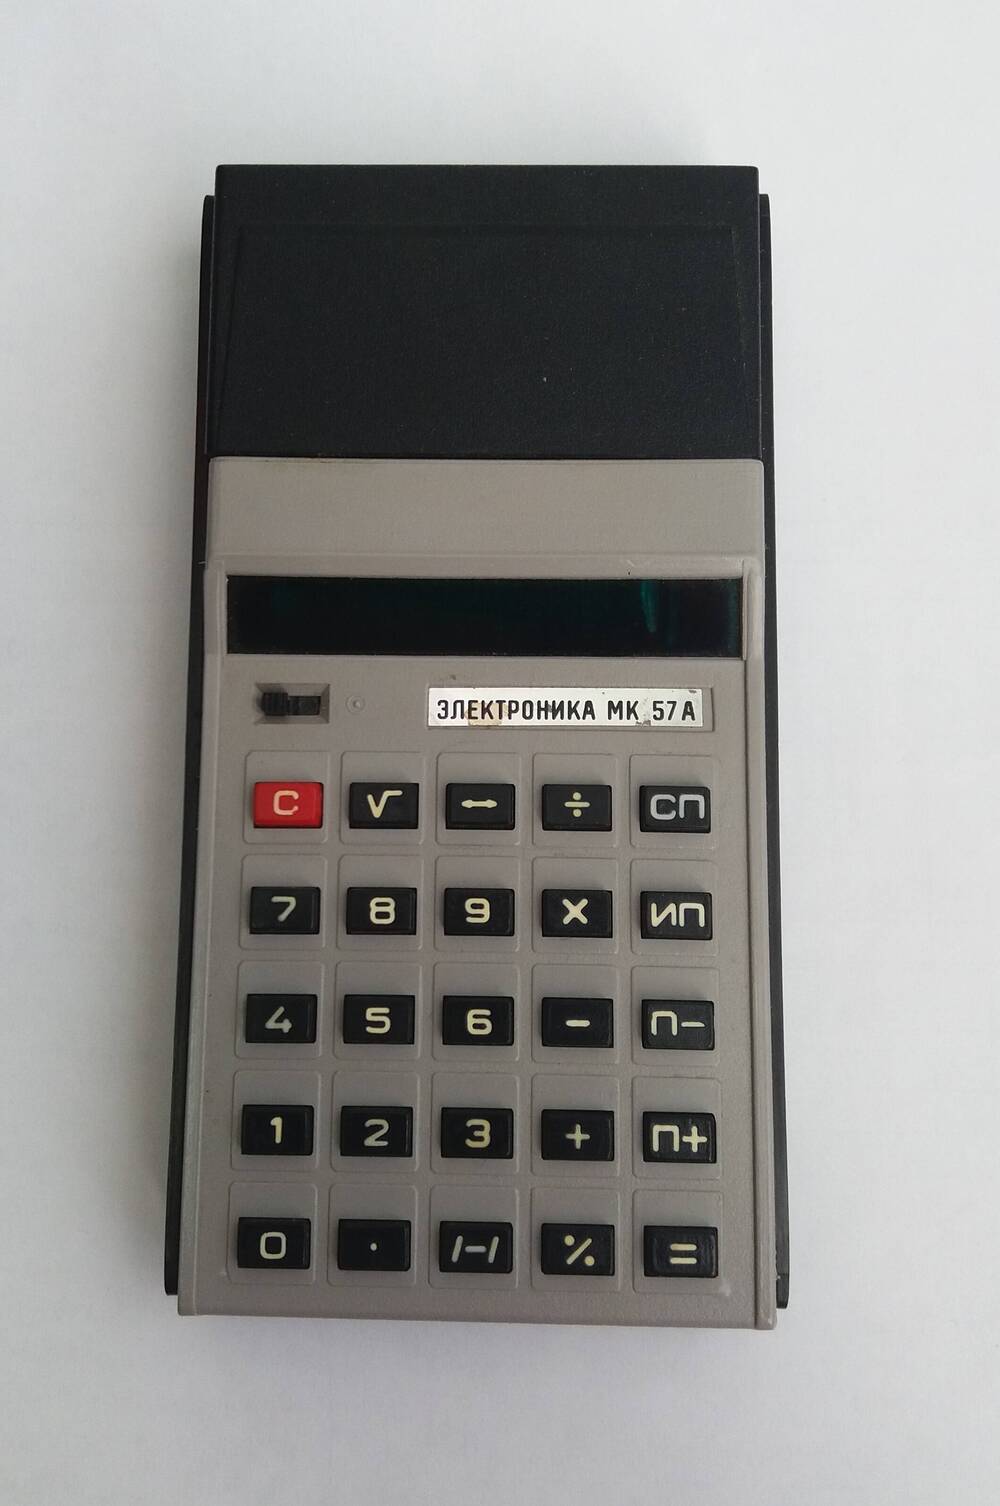 Микрокалькулятор «Электроника МК 57А».